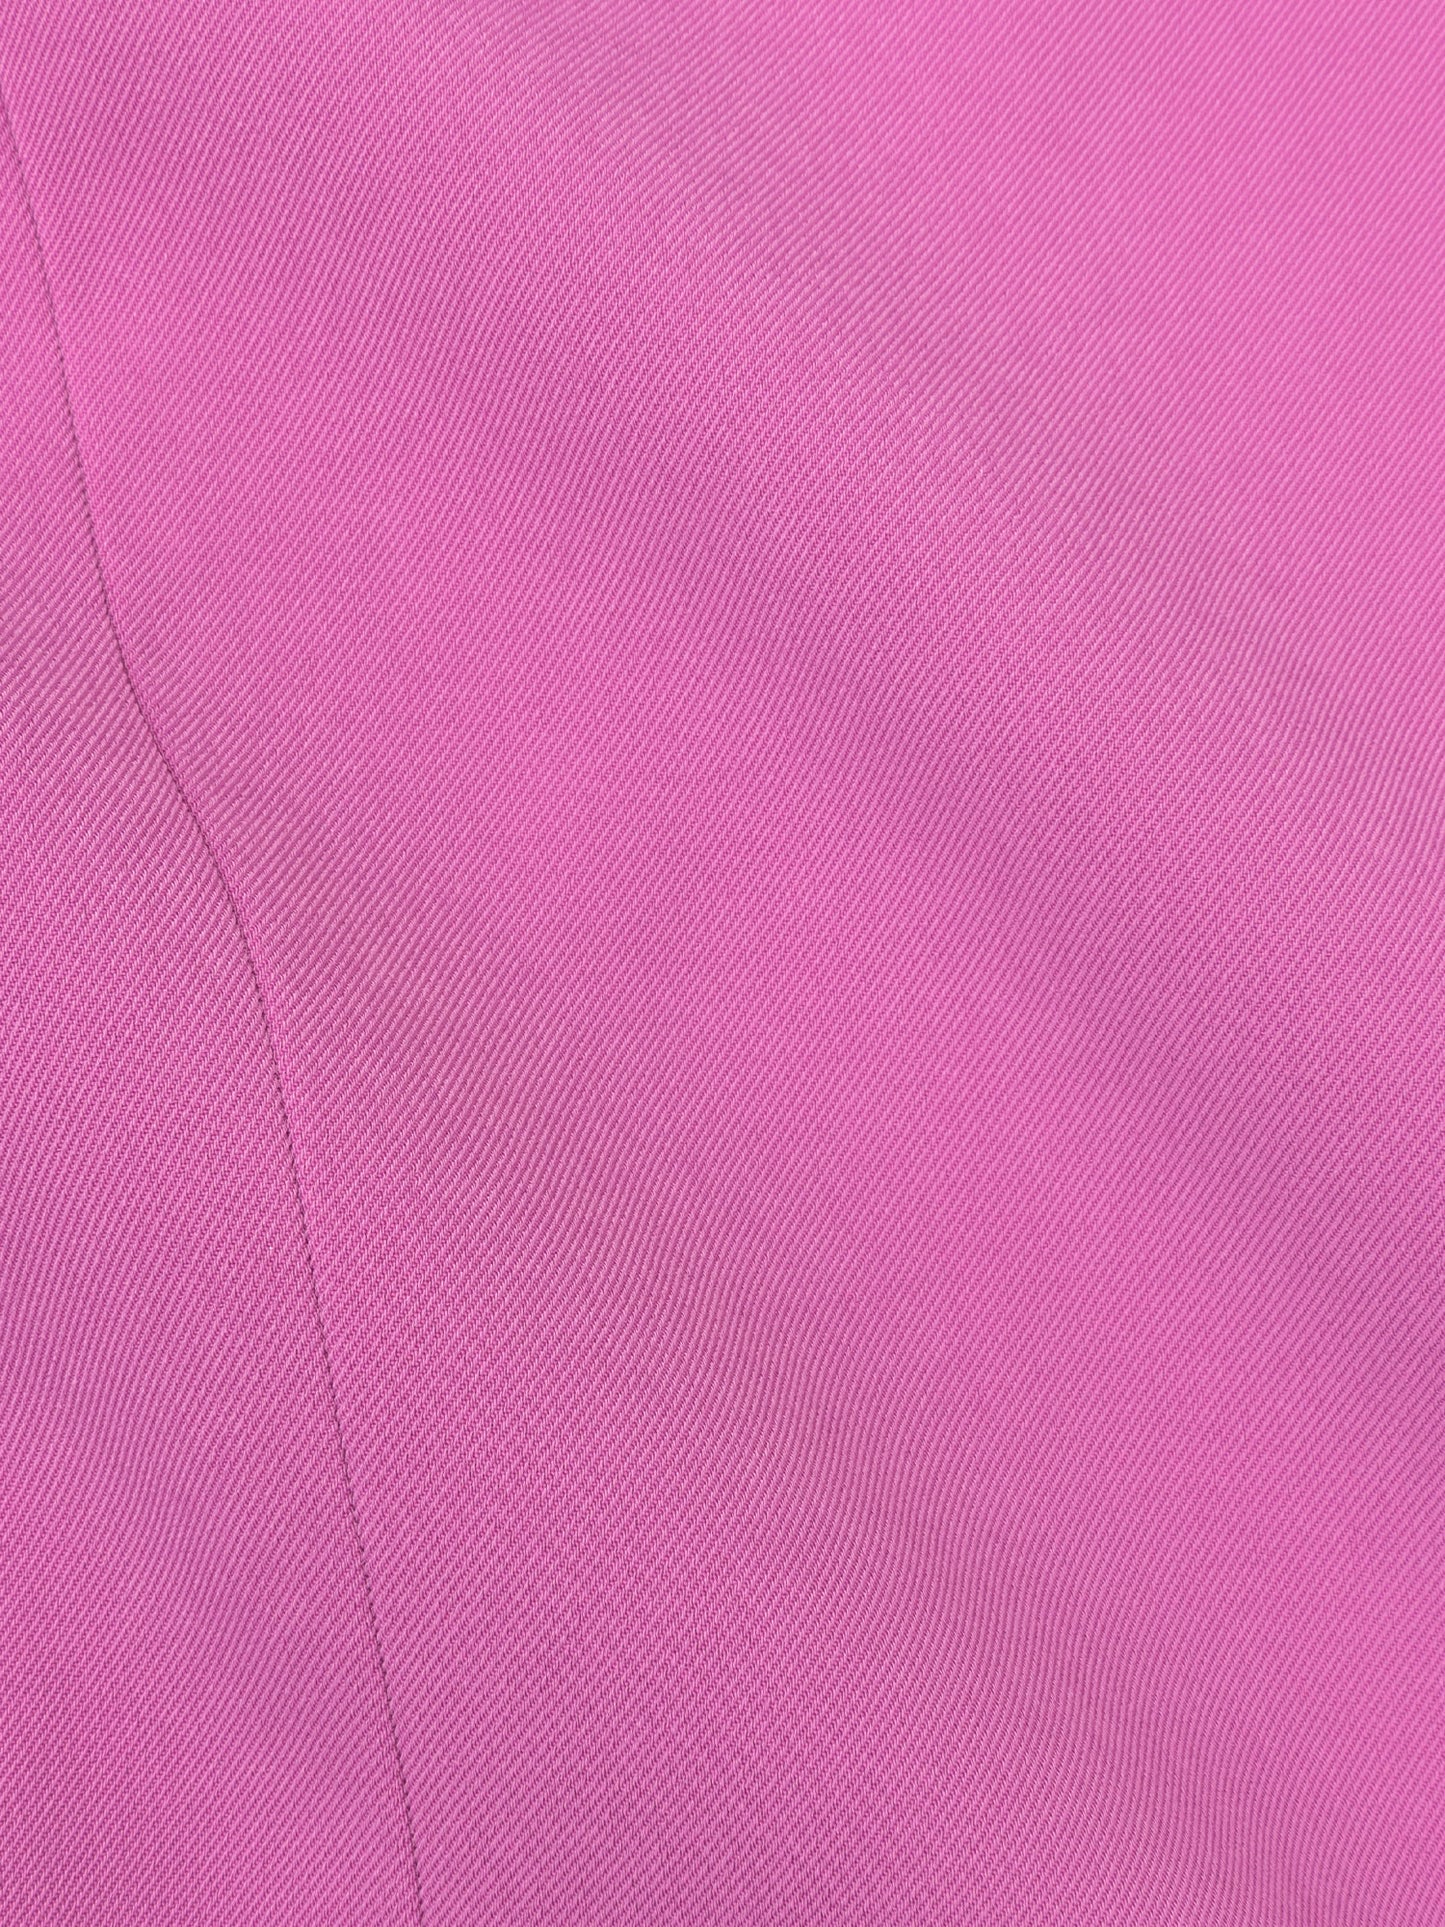 Blazer maisie pink purple